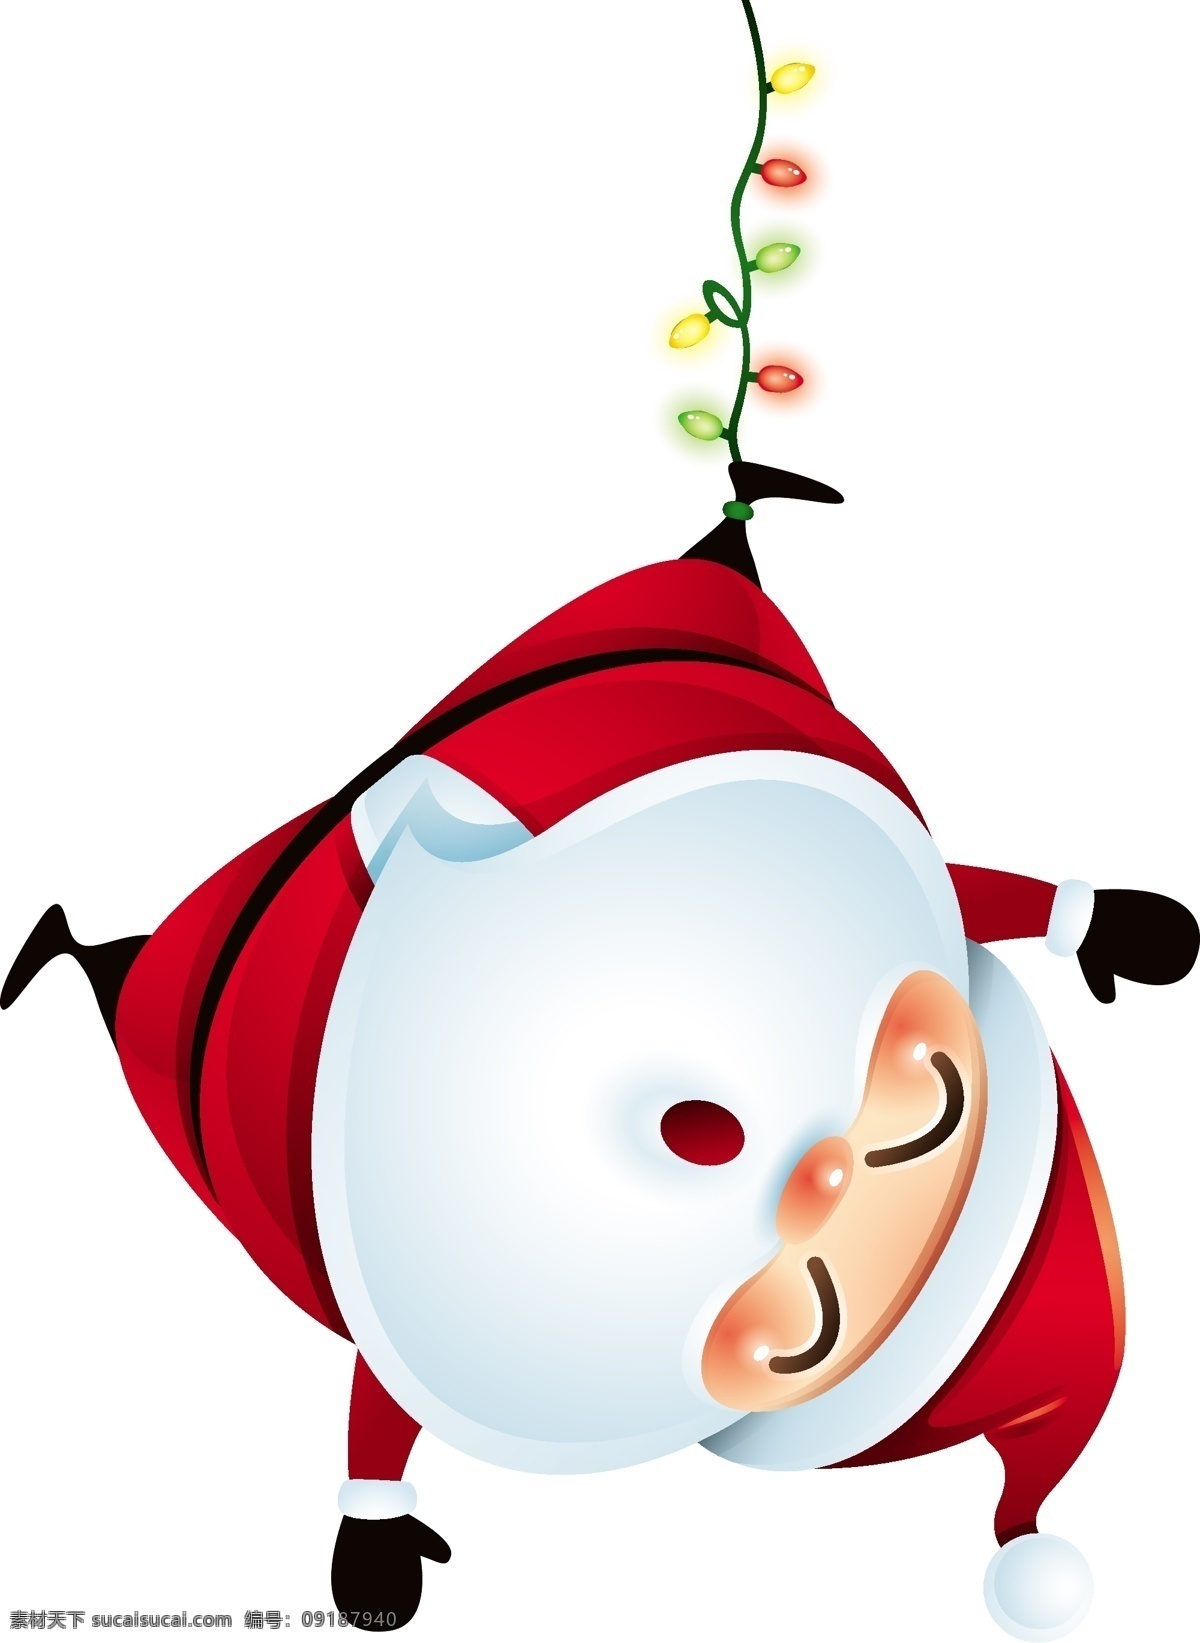 倒 吊 圣诞节 老人 矢量 圣诞灯 开心 红色 白胡子 卡通 人物 形象 节日 装饰